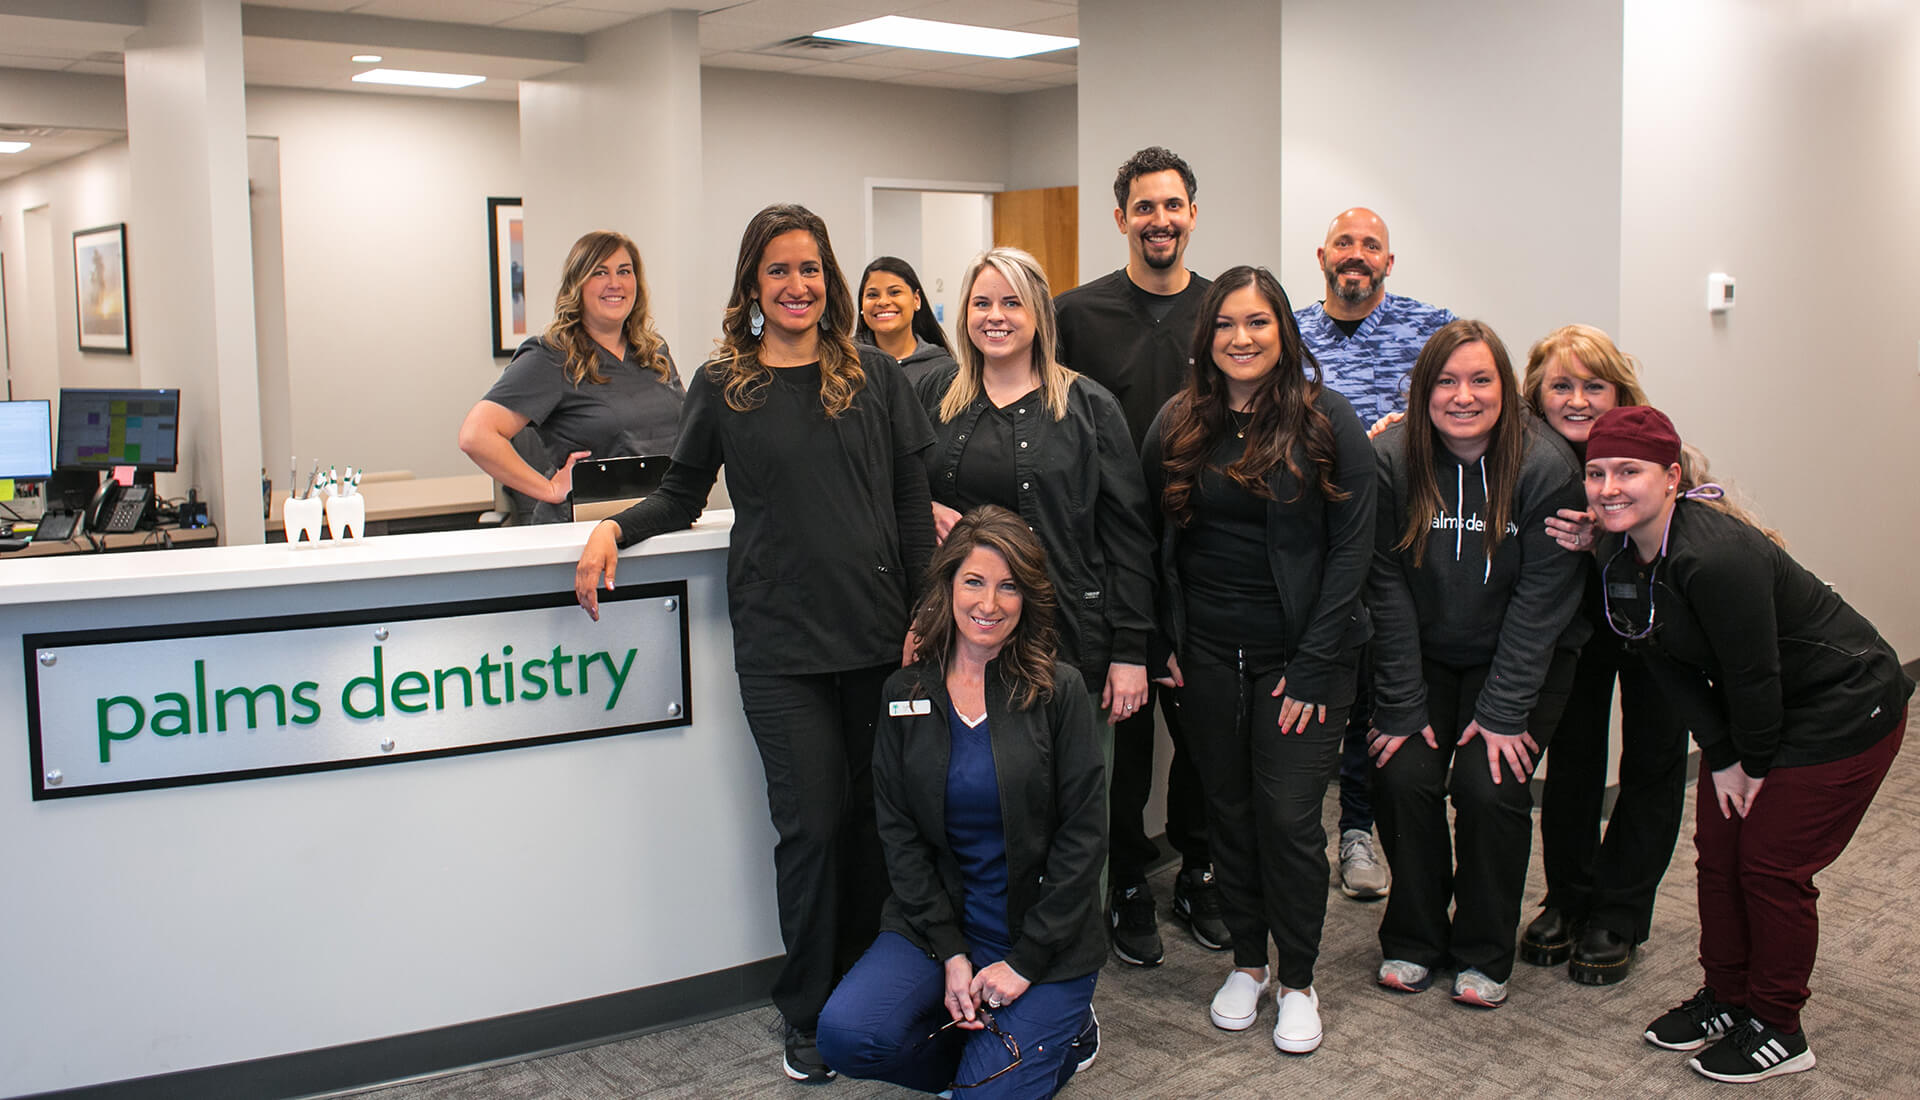 The Palms Dentistry team